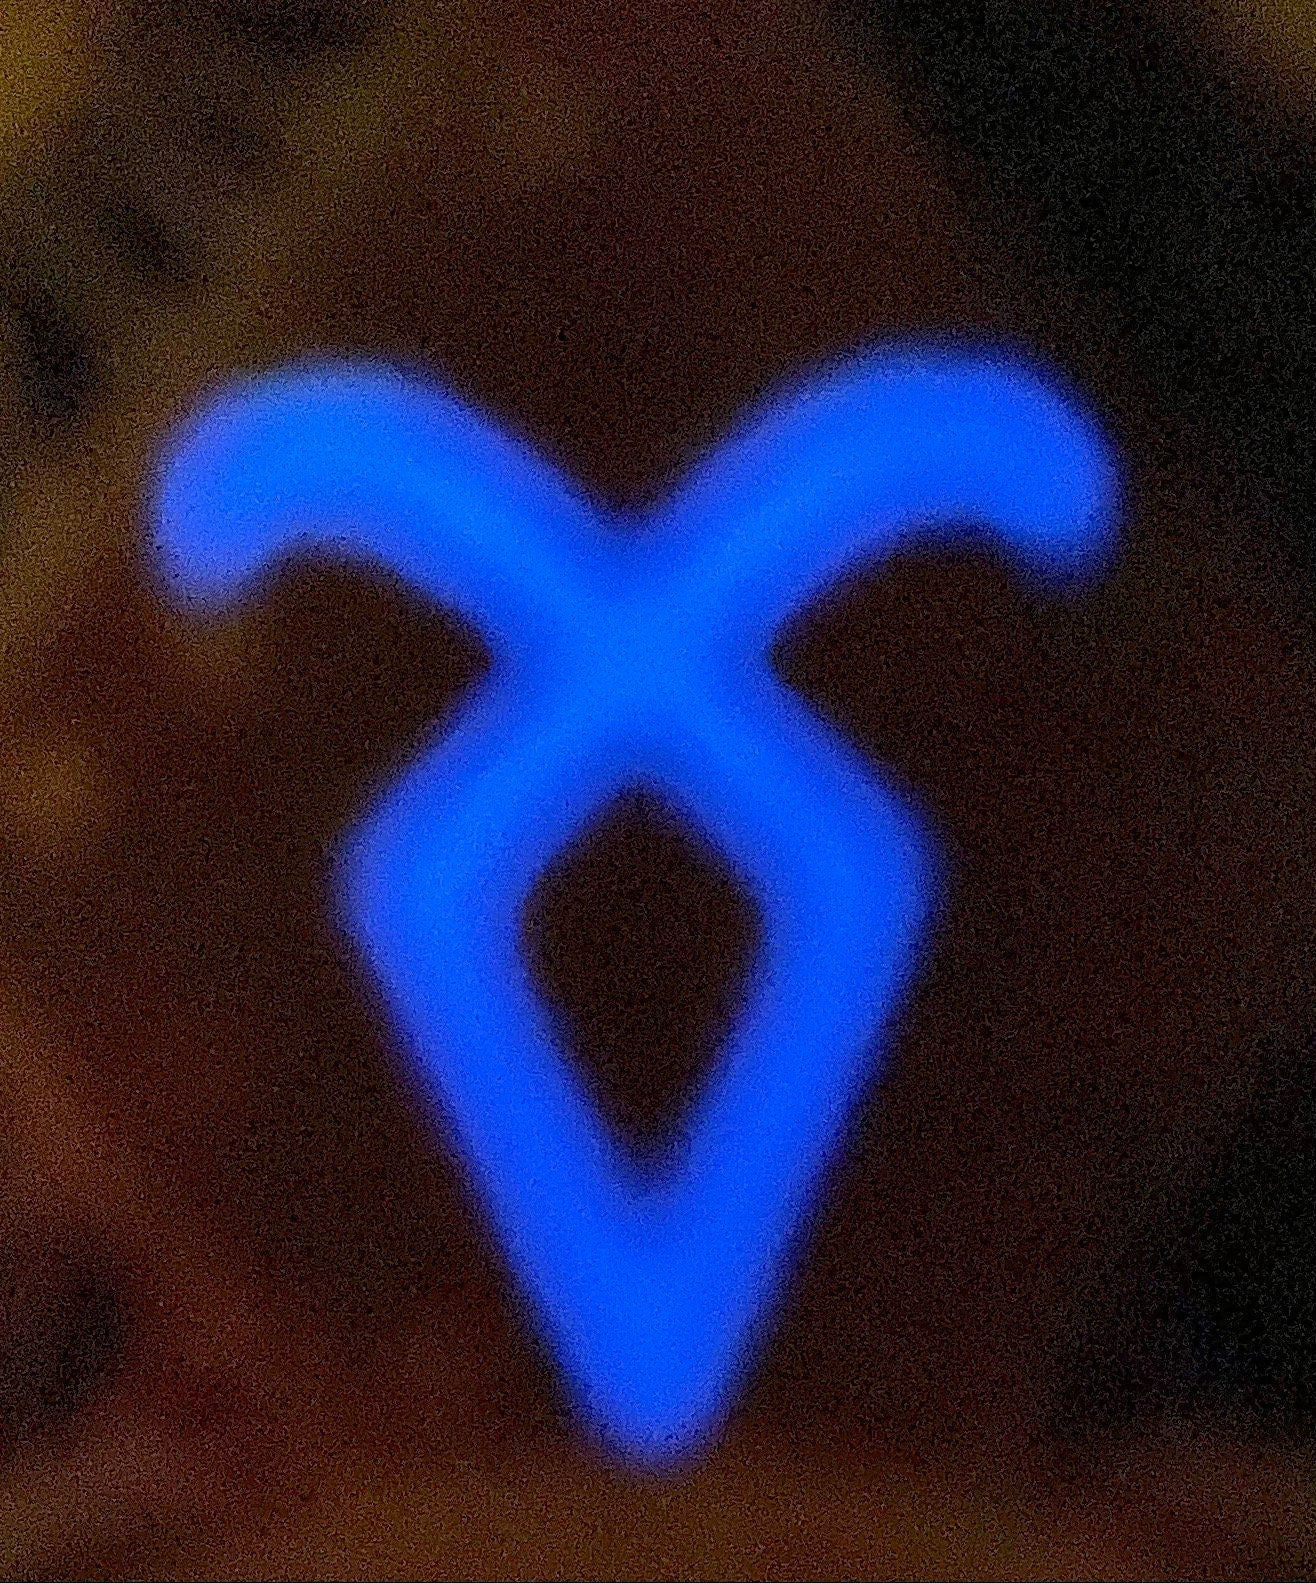 shadowhunter runes angelic power